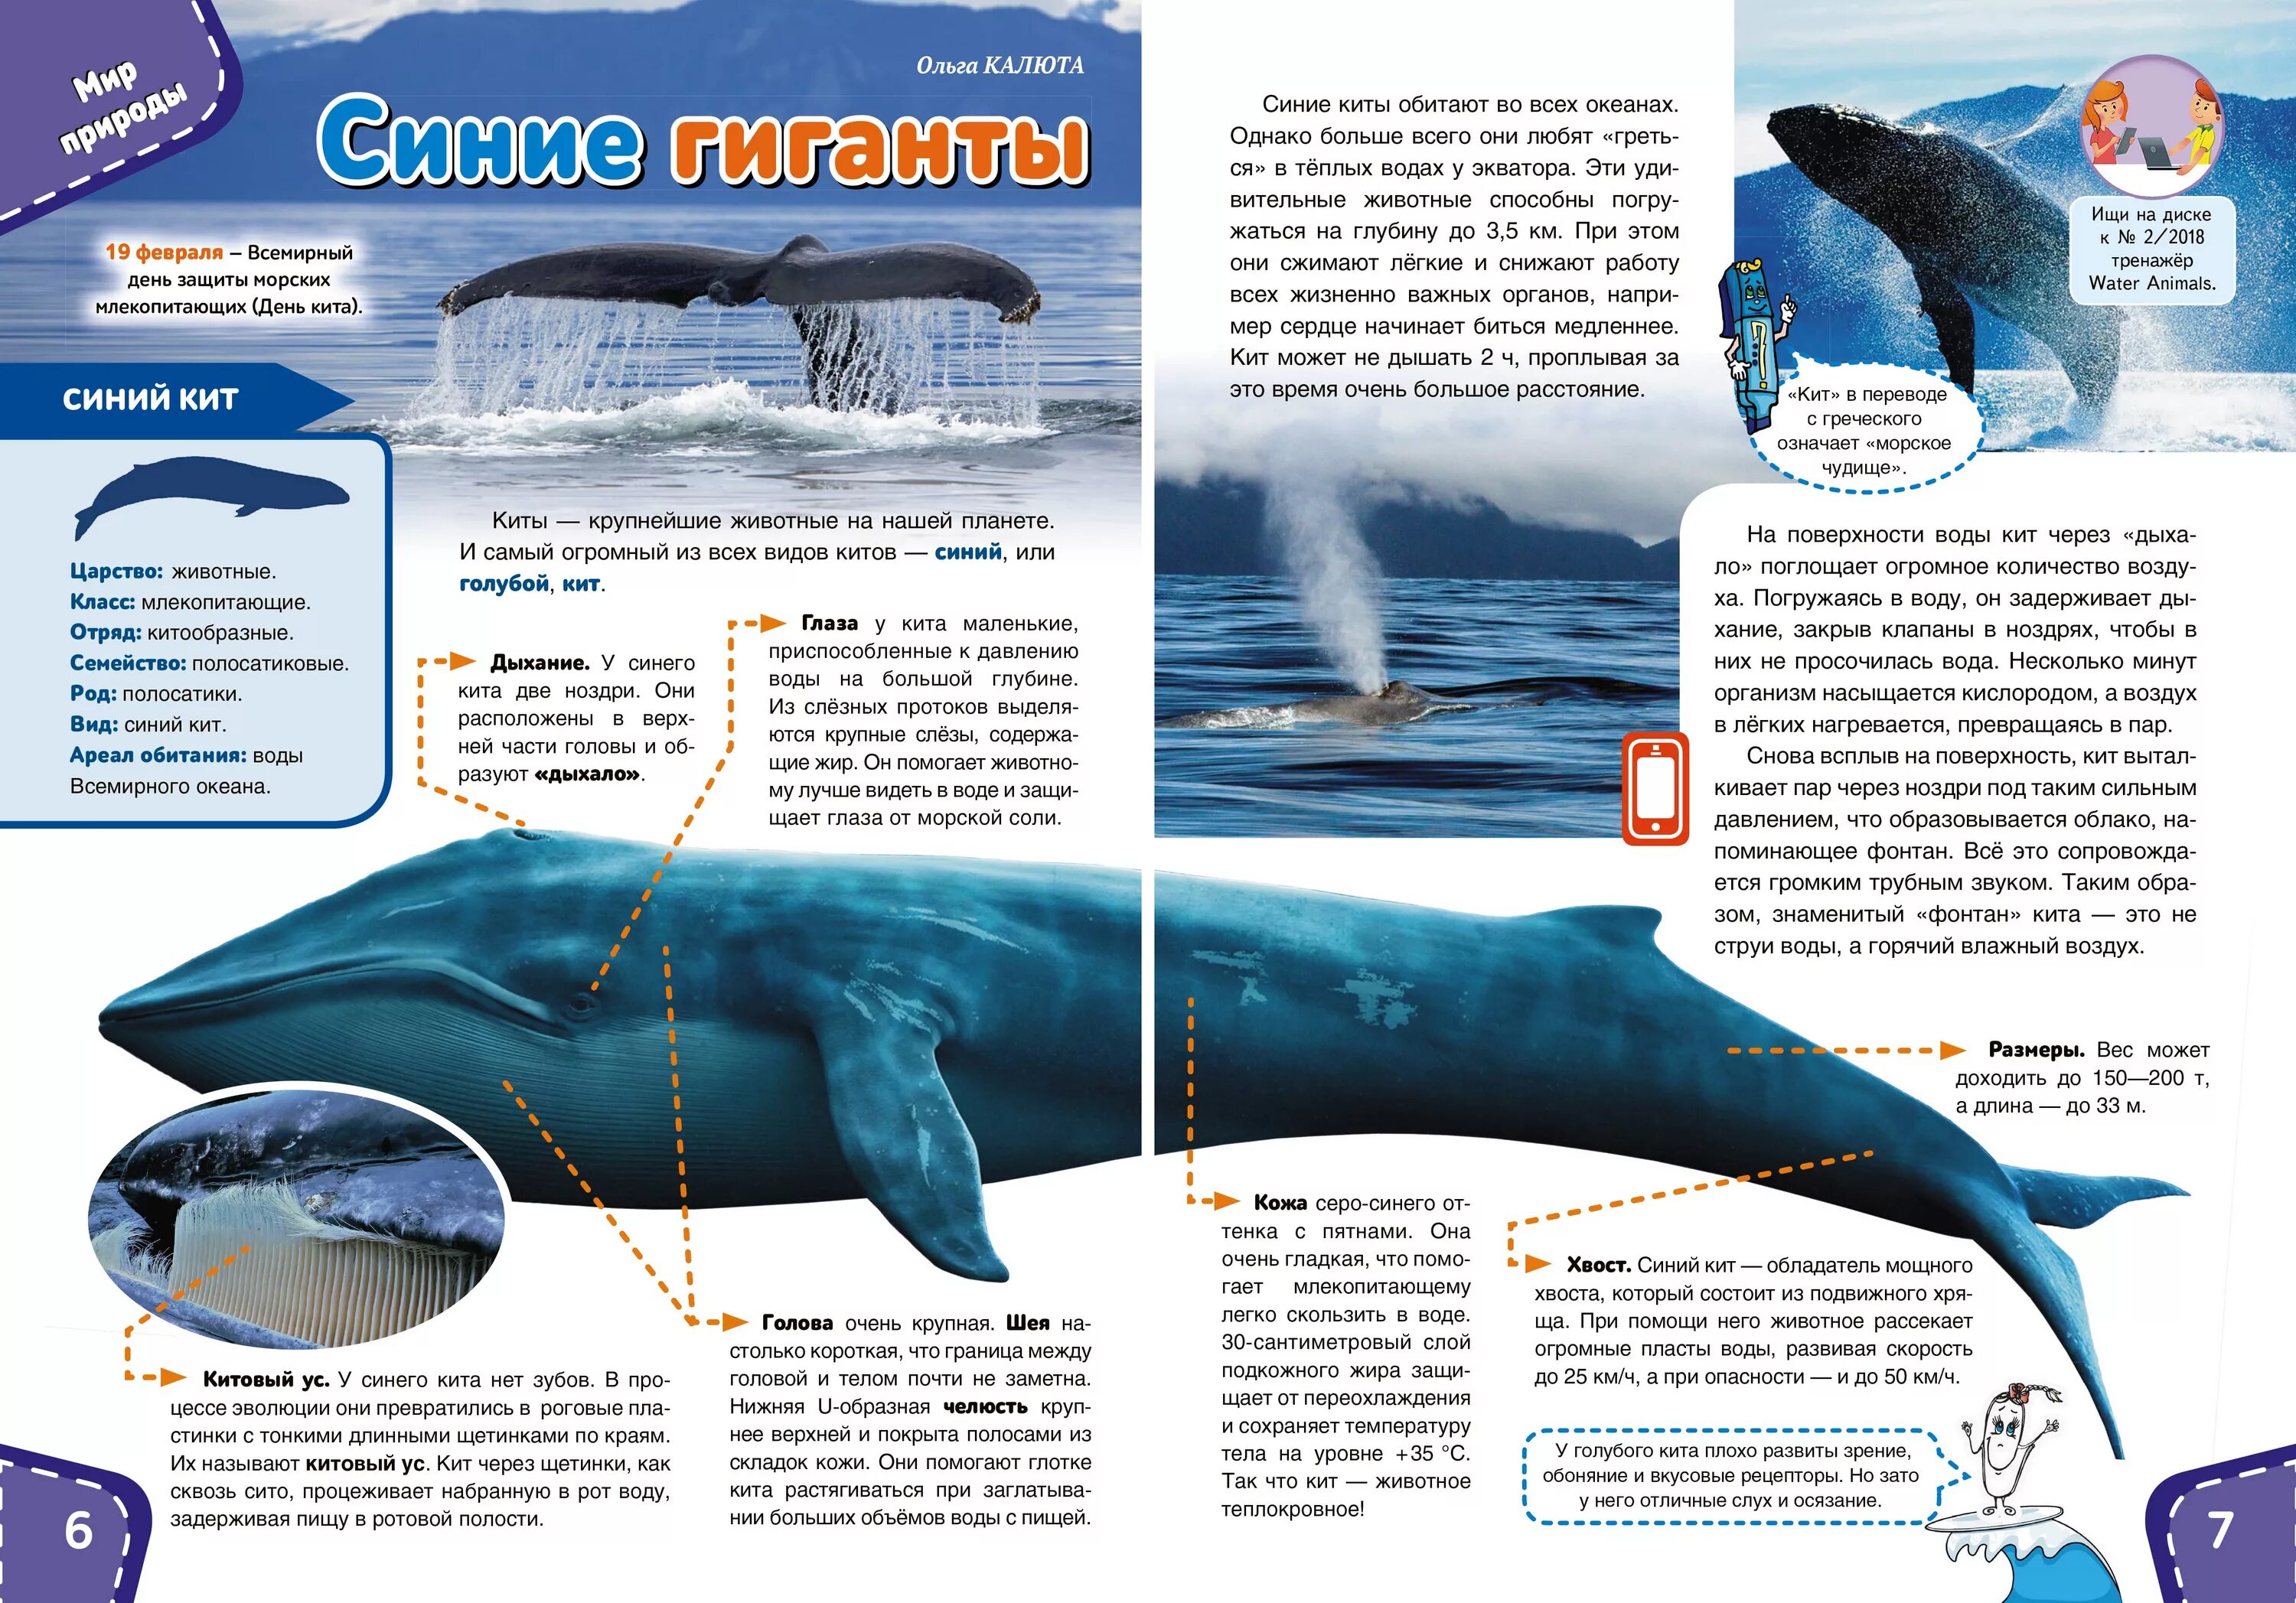 Где живут синие. Синий кит. Голубой кит. Размеры синих китов. Синий кит Размеры.